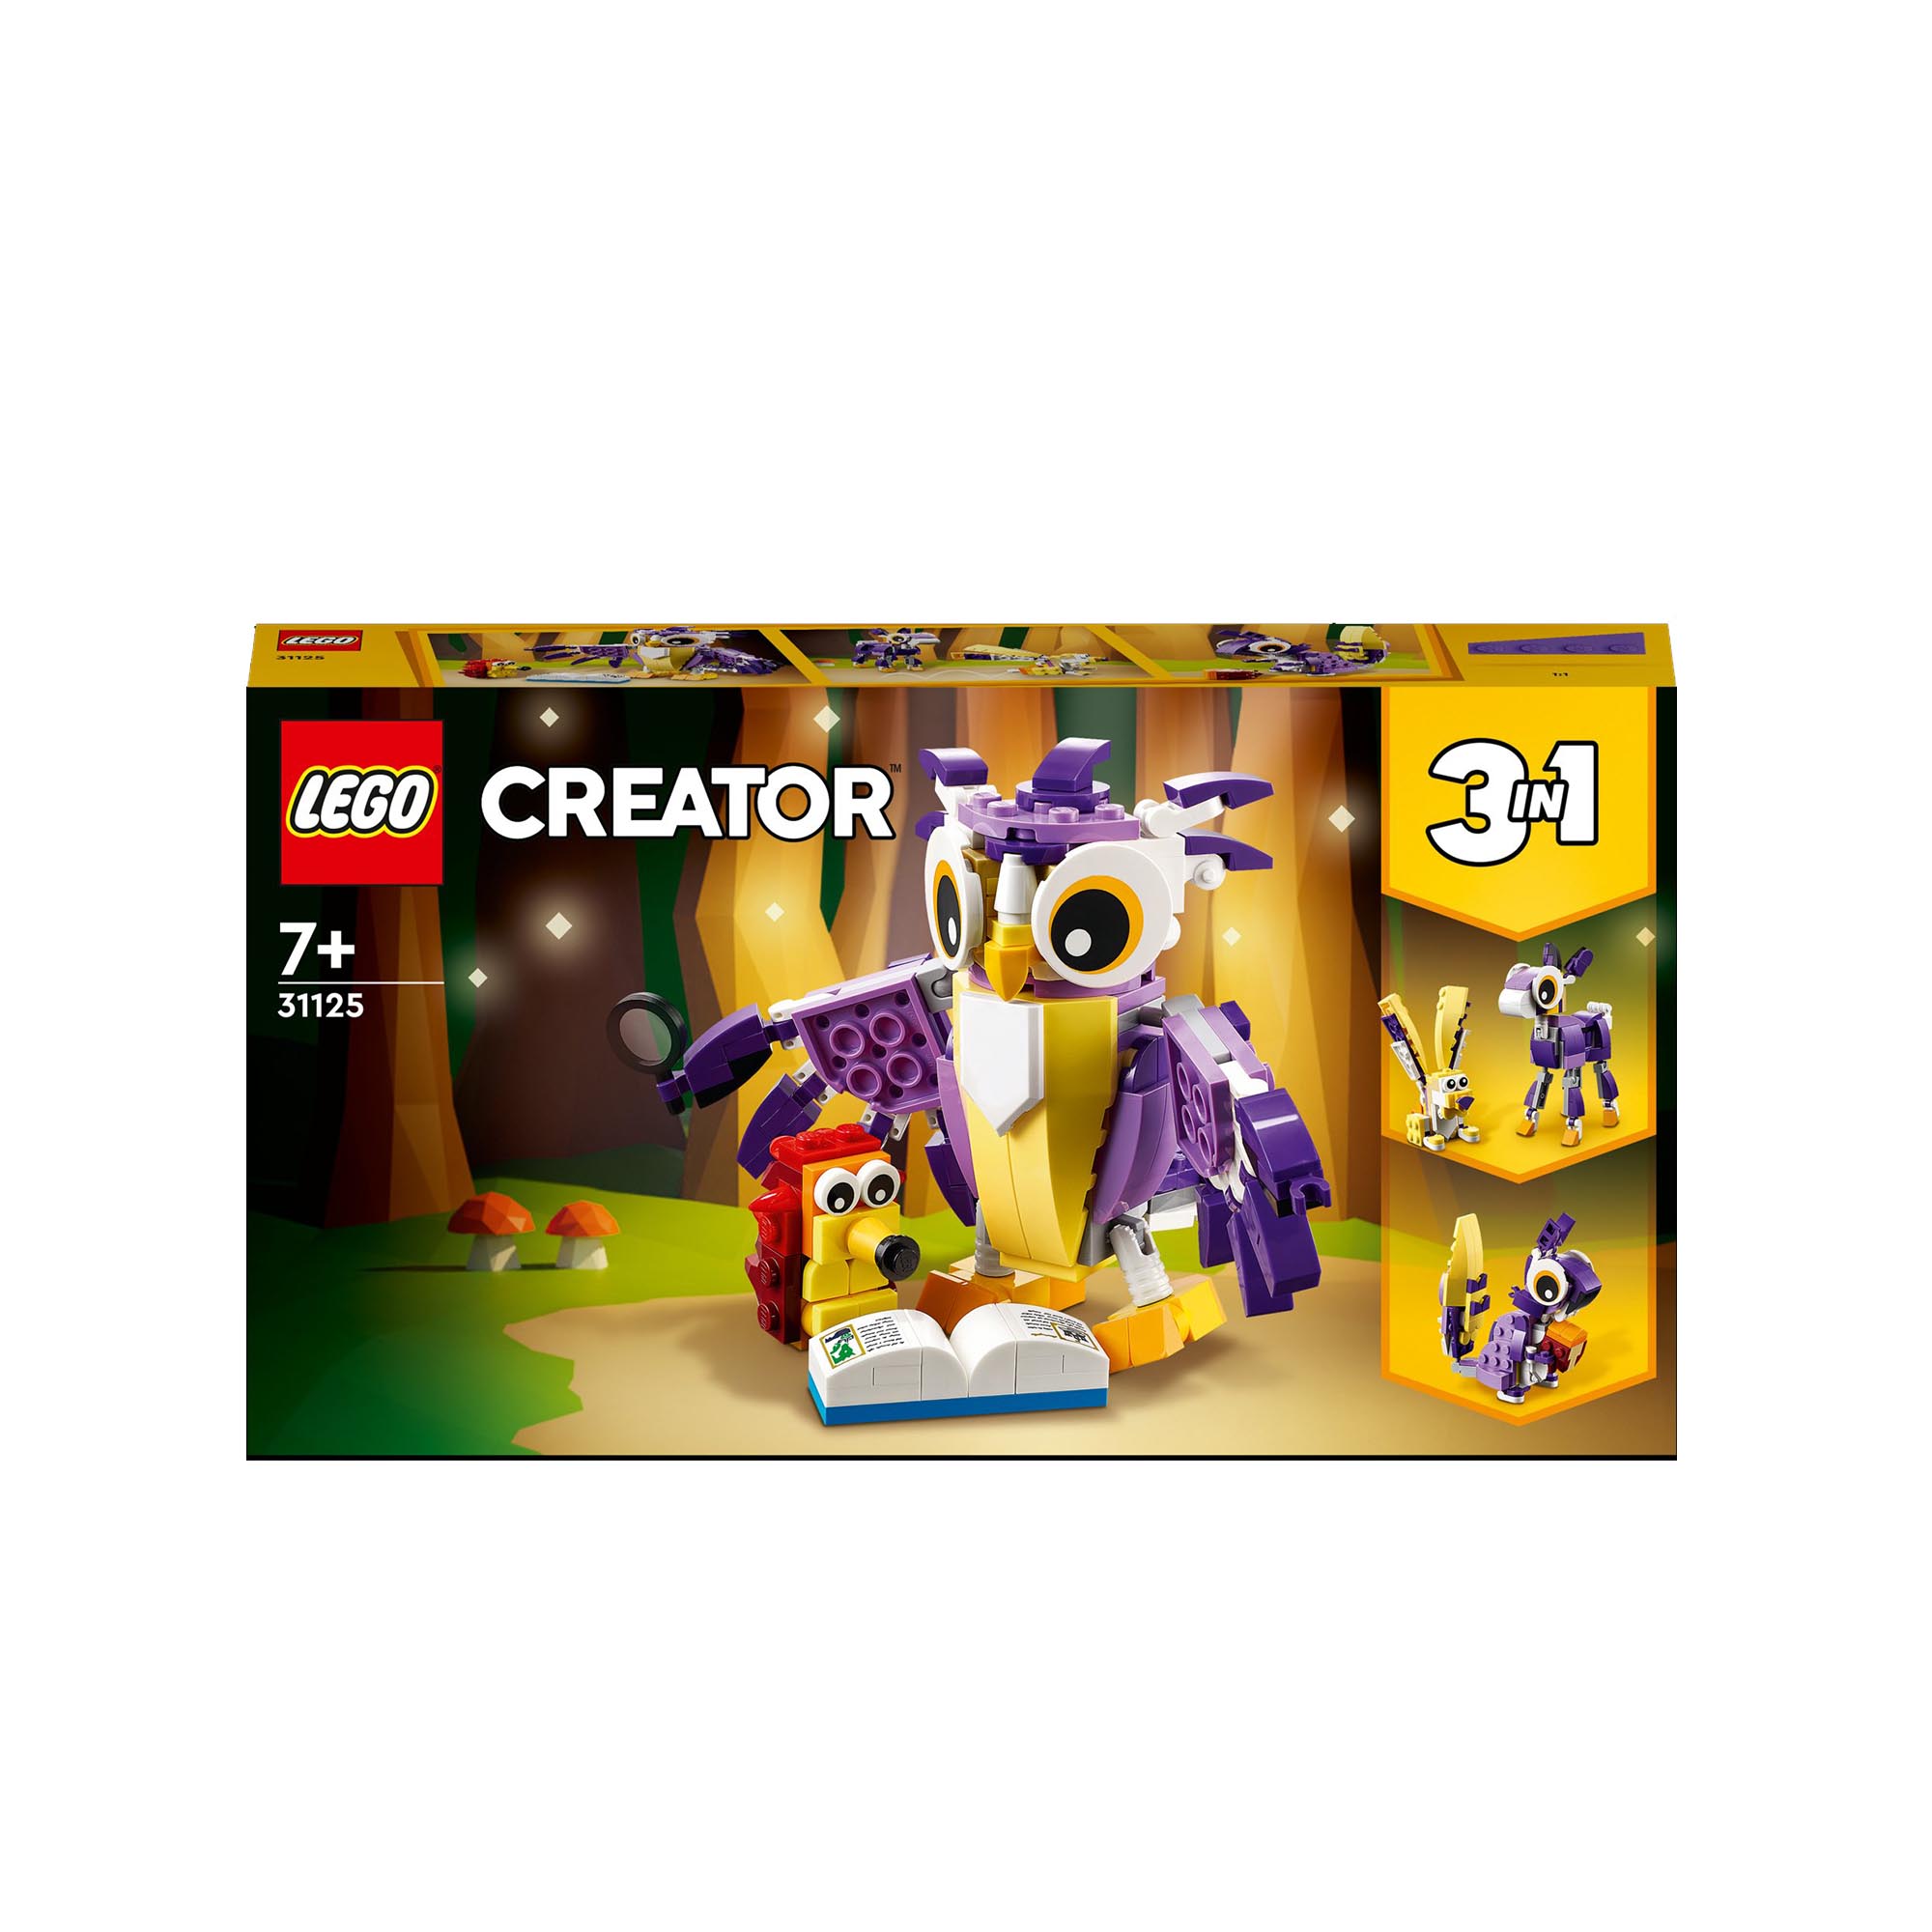 LEGO Creator 3in1 Creature della Foresta Fantasy, Set con Animali Giocattolo tra 31125, , large